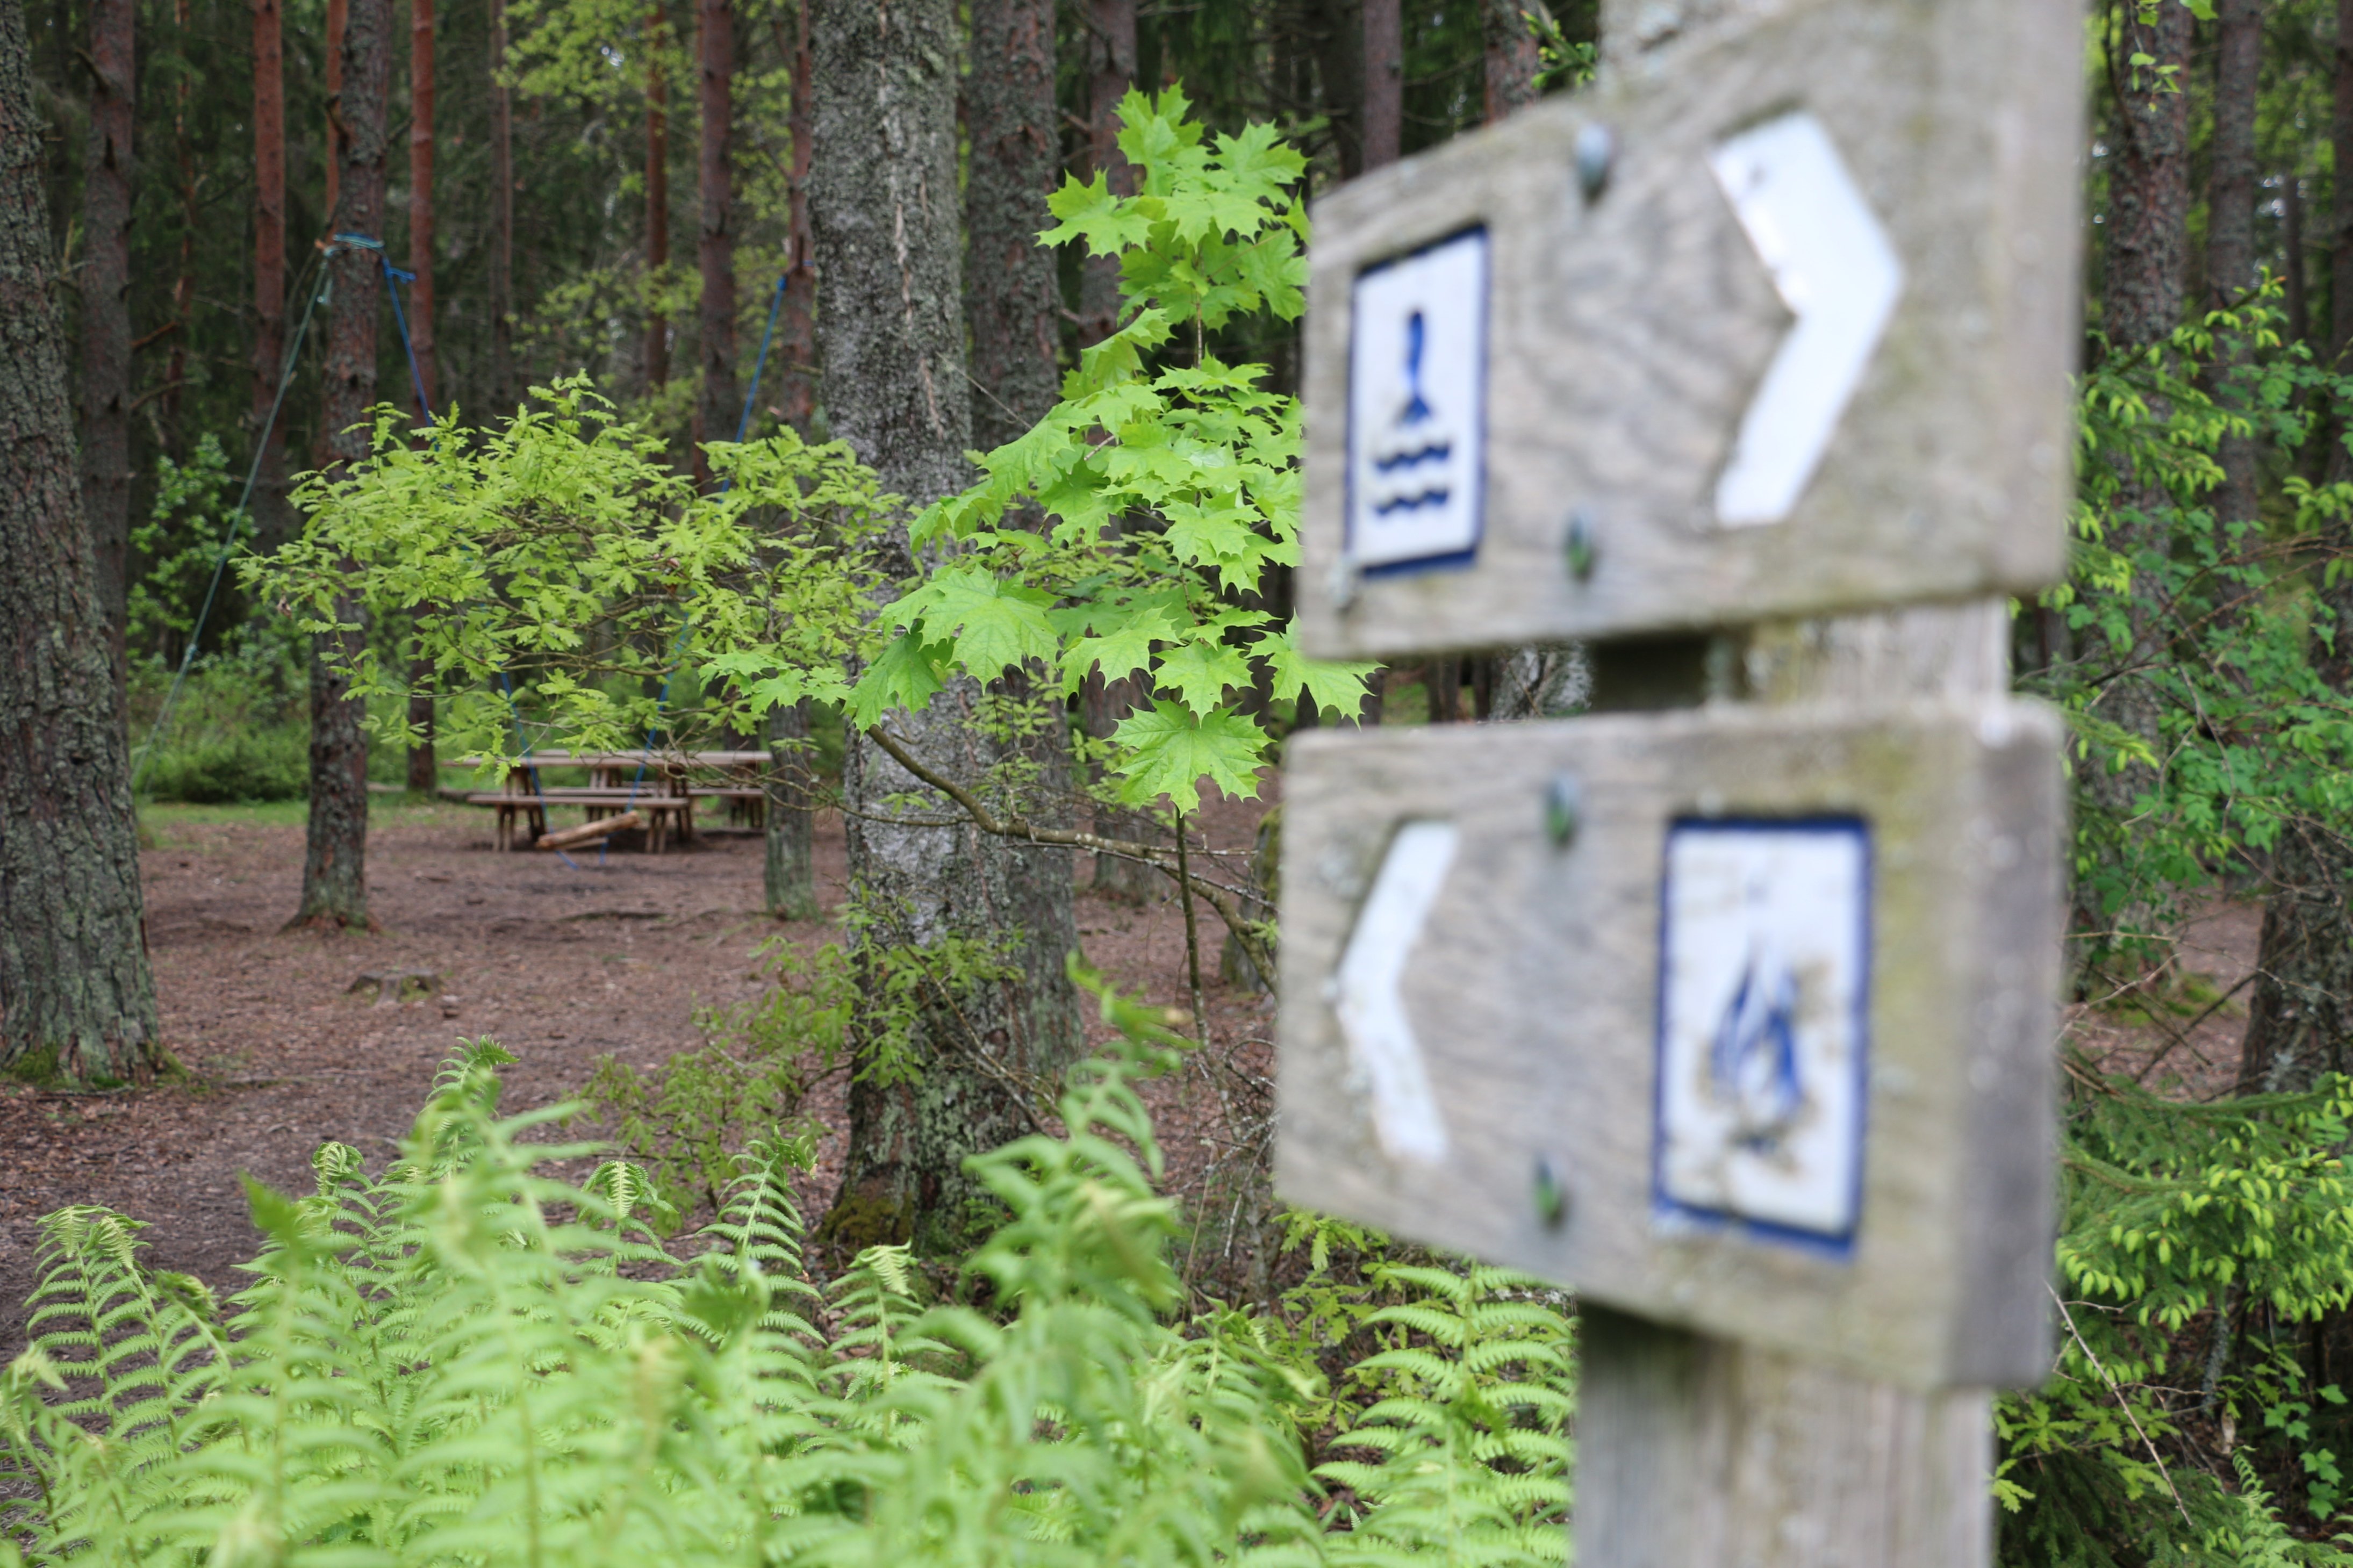 Två träskyltar som visar vägen till rastplats och badplats. I skogen syns ett bord med bänkar.